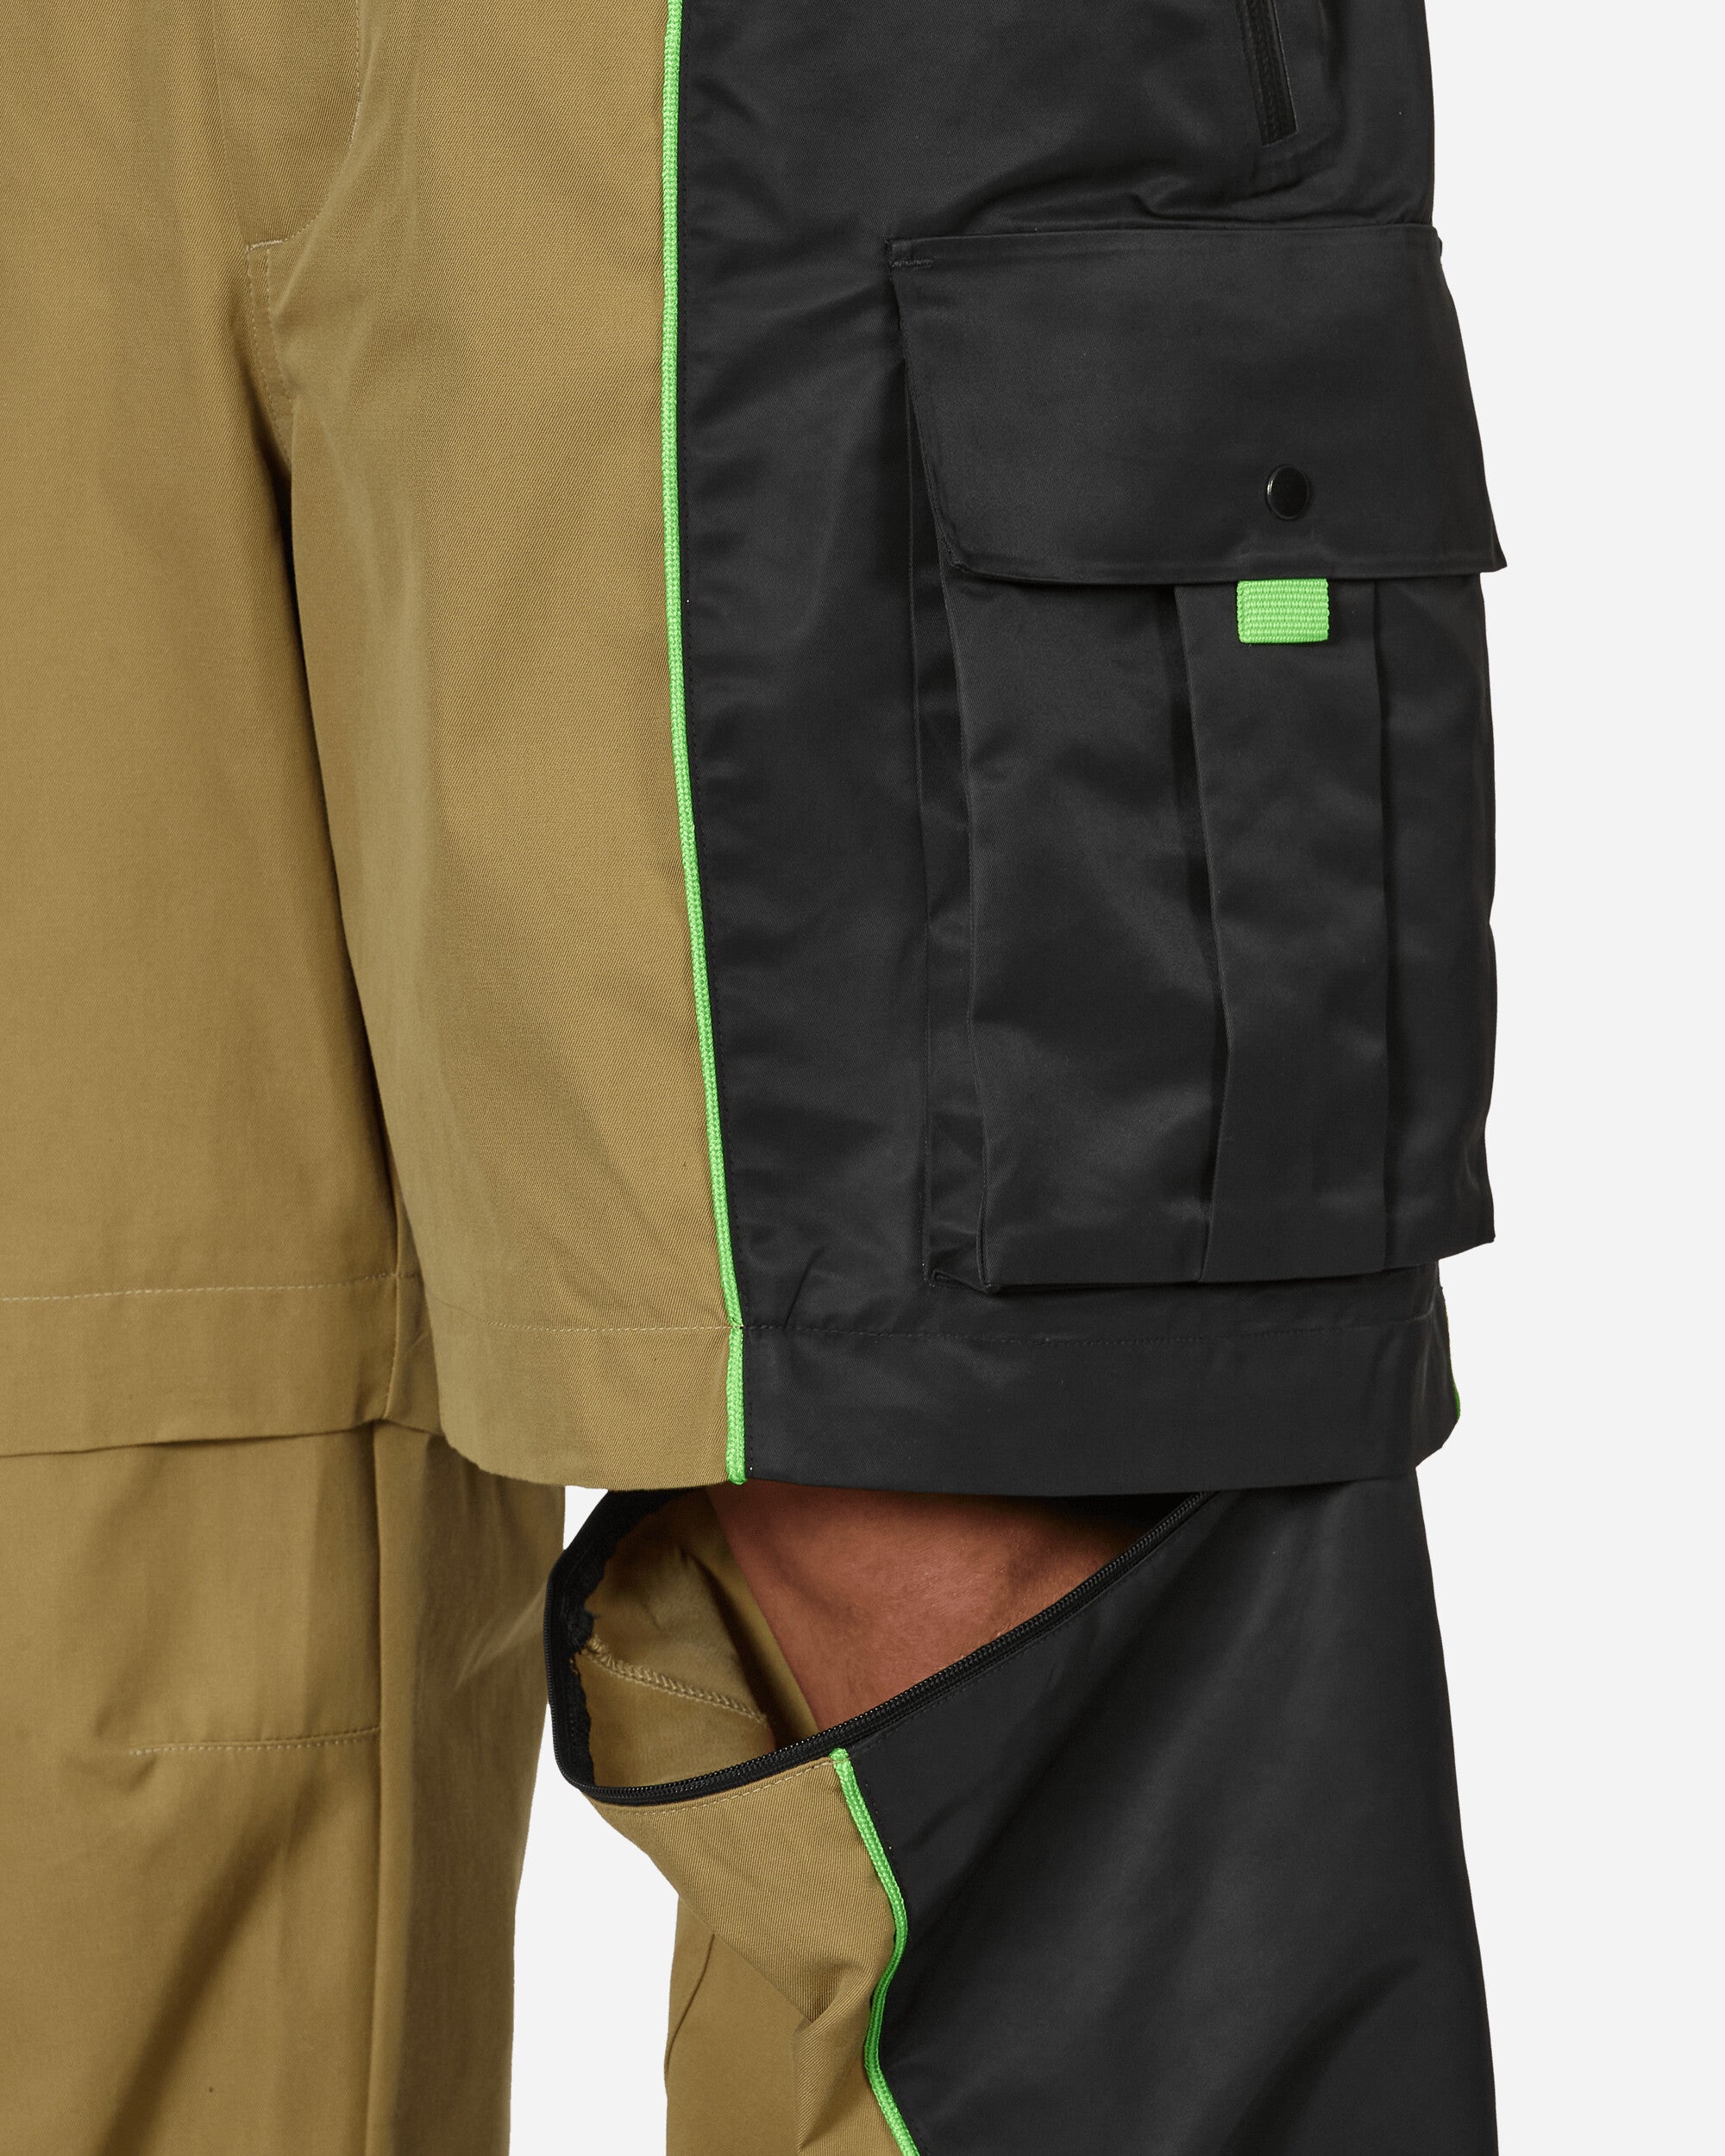 Nike Nrg Np Cargo Pants Khaki/Black Pants Cargo DV4004-255